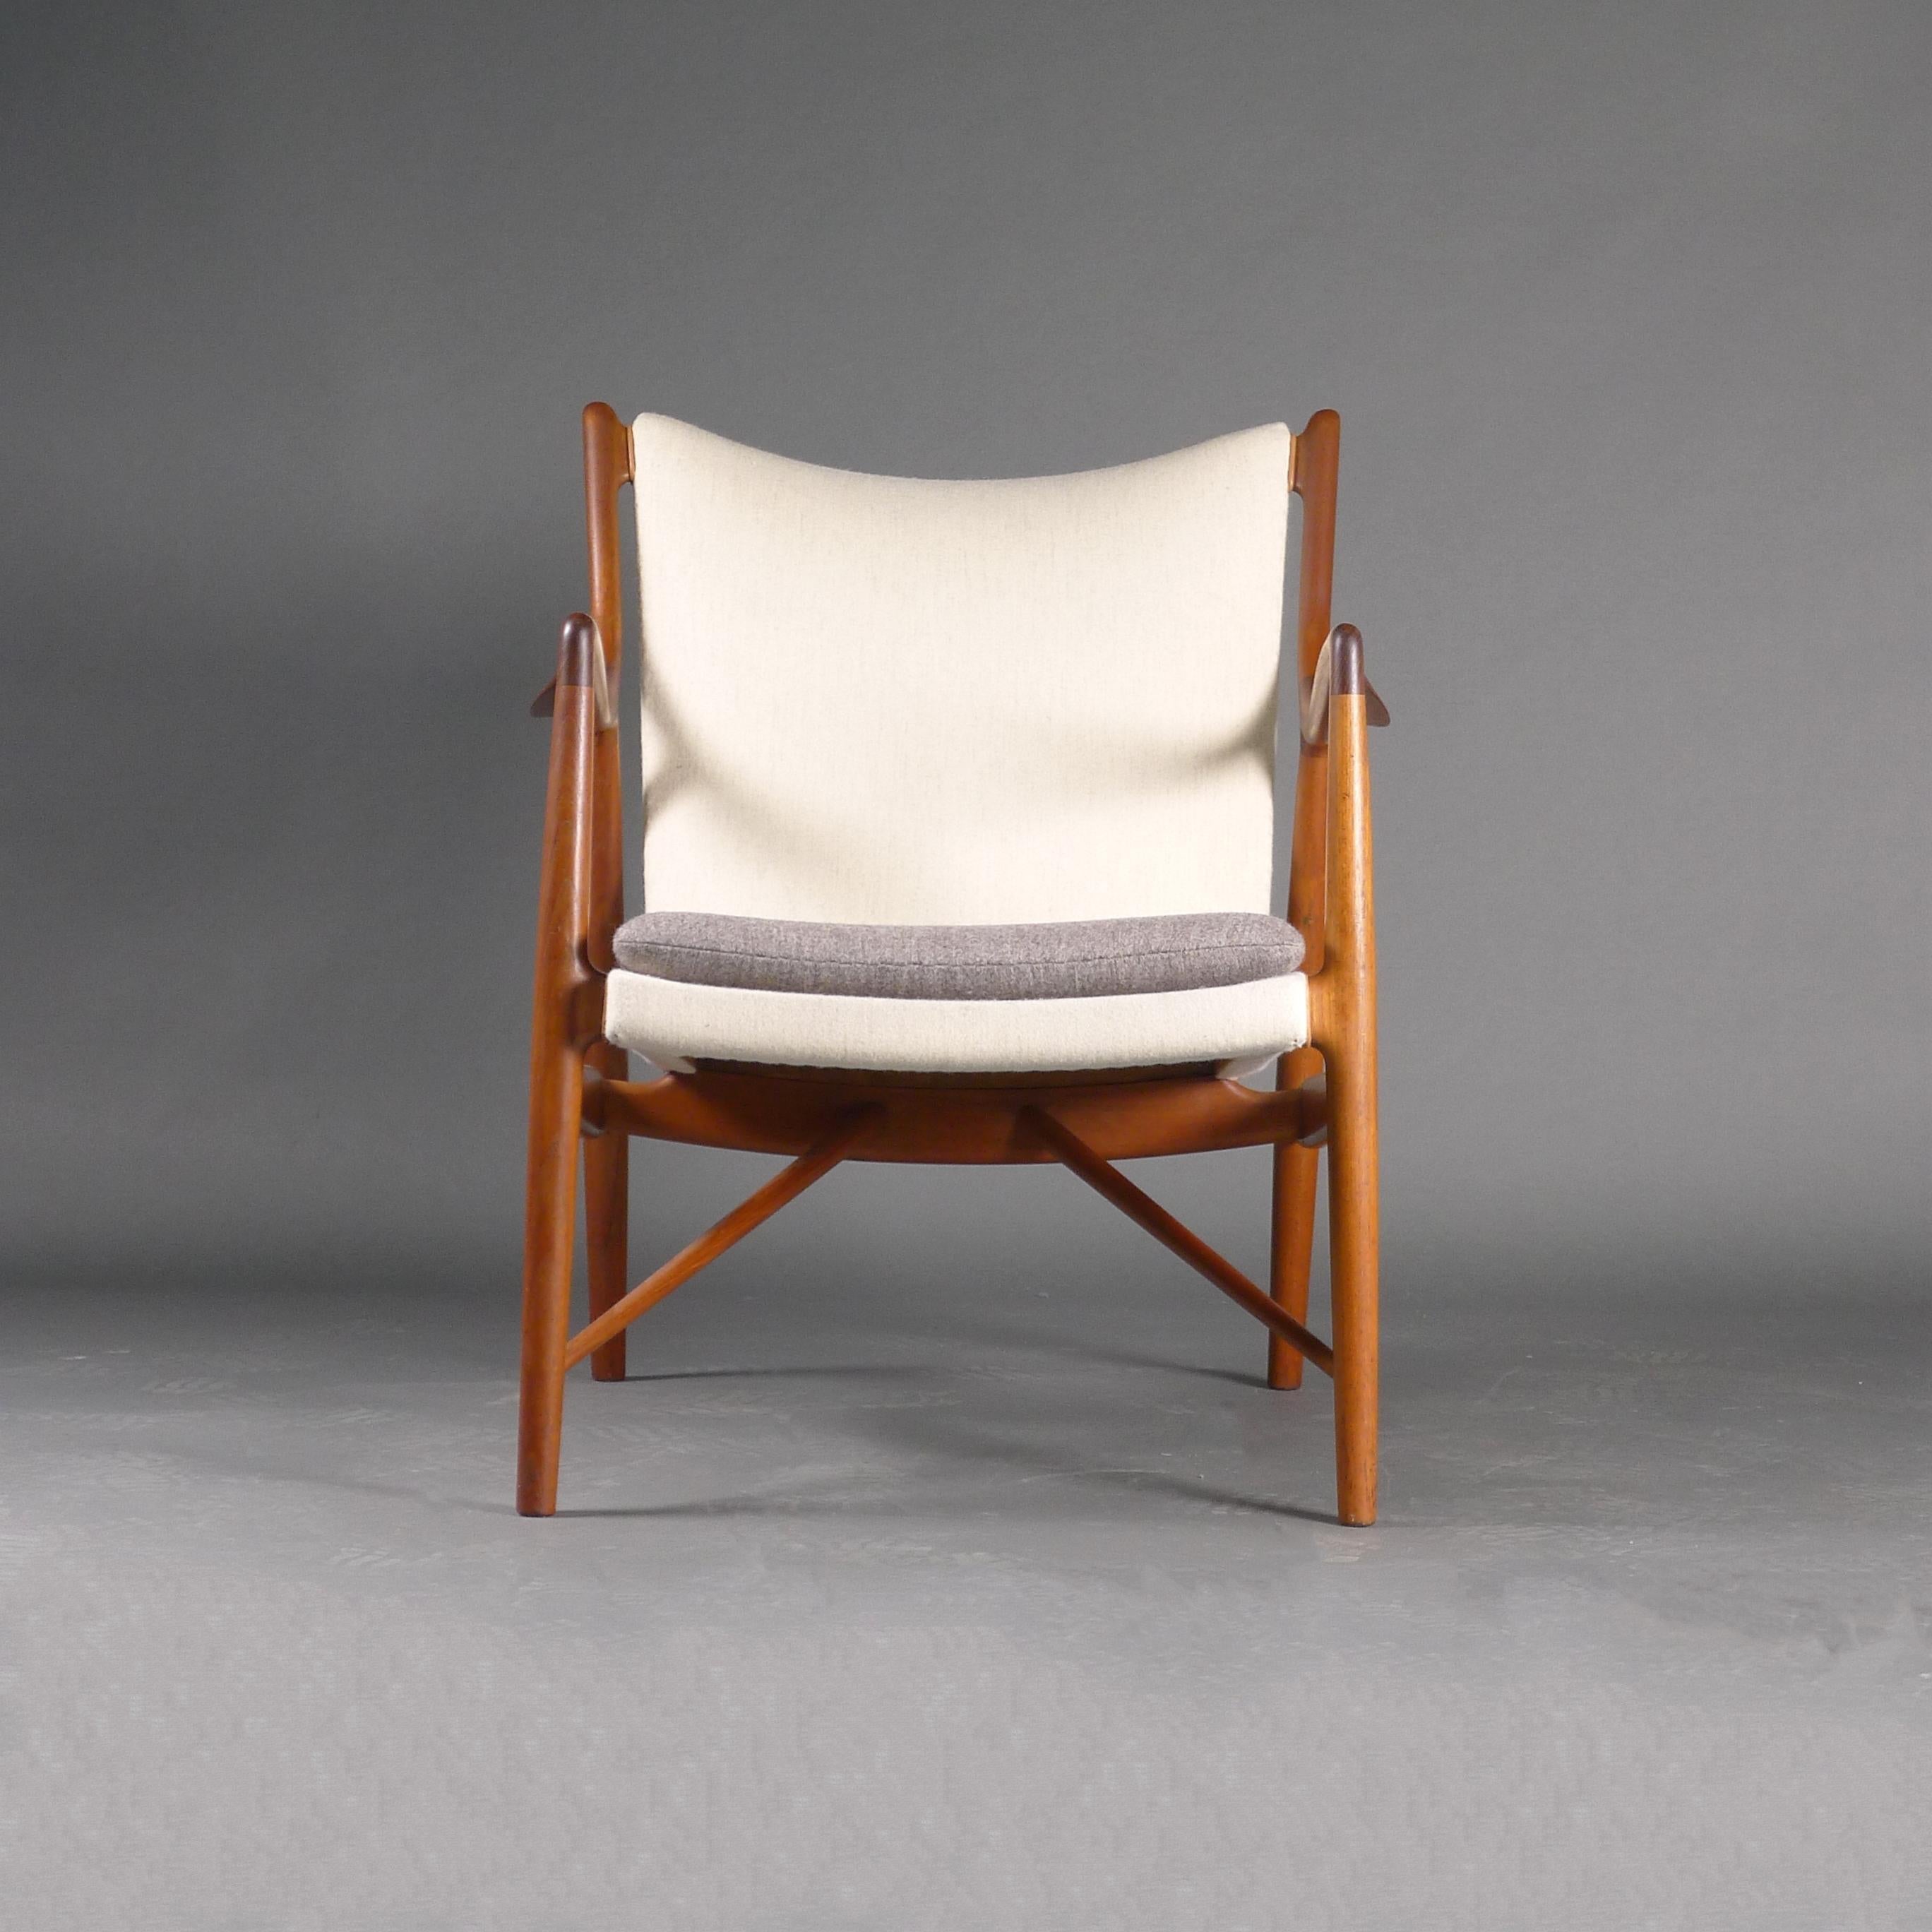 Danish Model NV45 Easy Chair, Designed by Finn Juhl, Made by Niels Vodder, 1940s For Sale